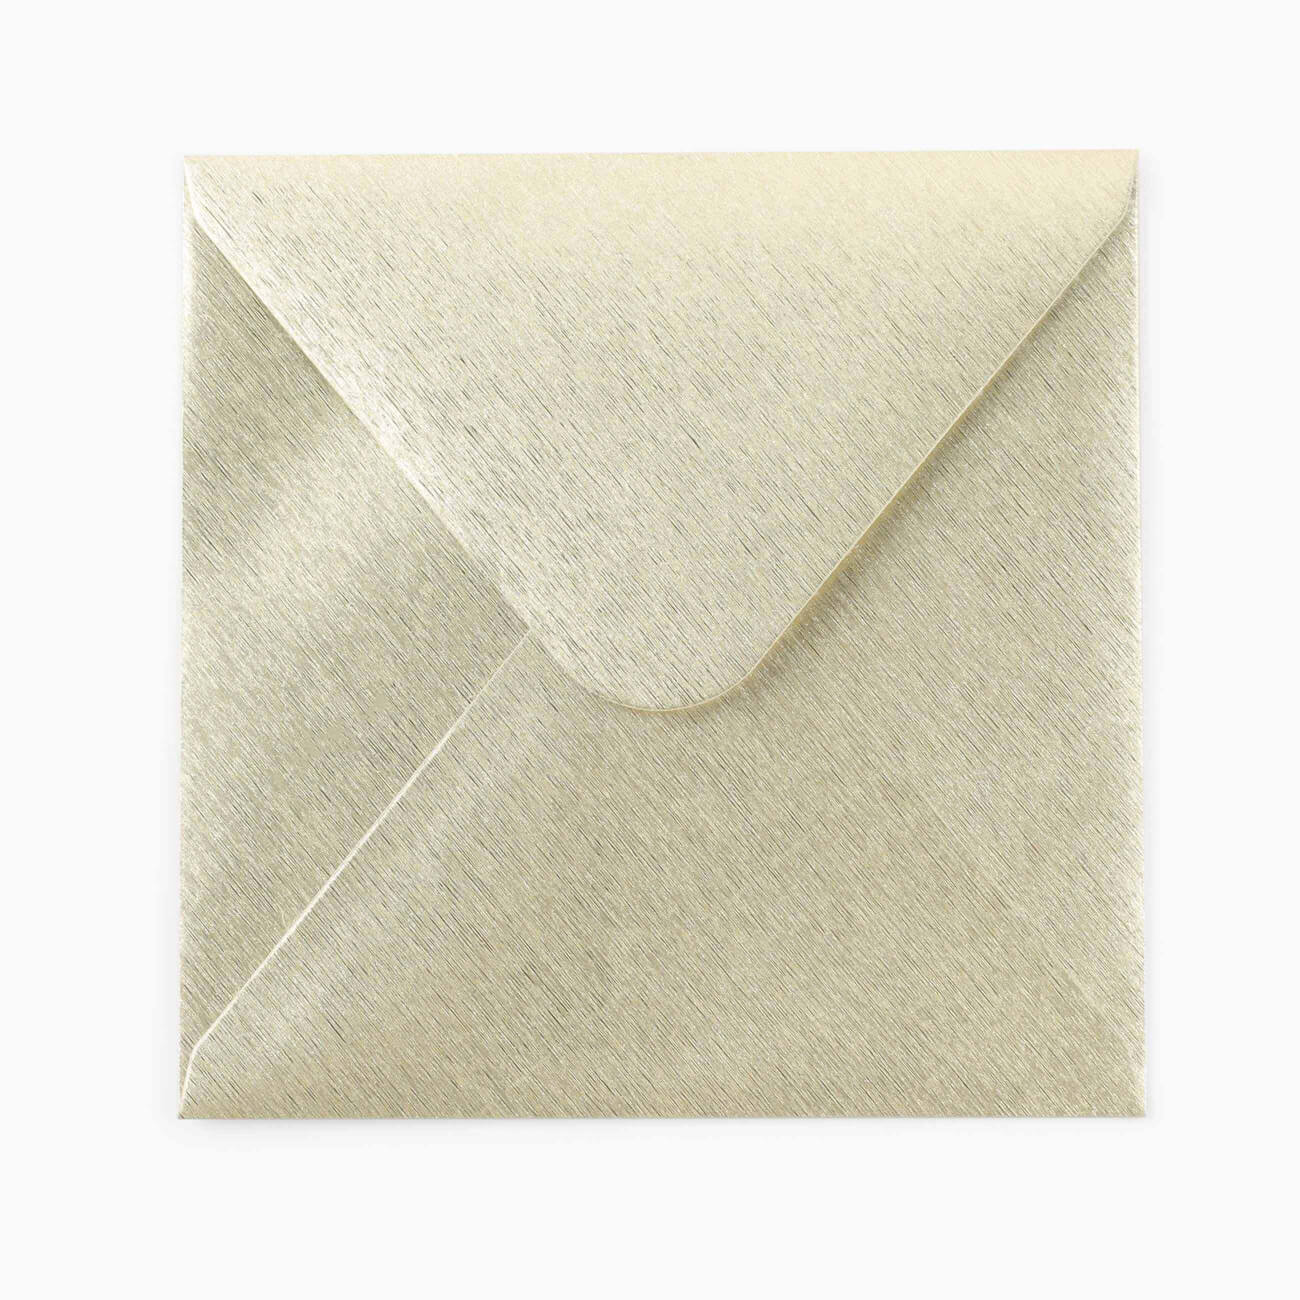 Конверт подарочный, 15 см, бумага, квадратный, золотистый, Congrats конверт для денег с новым годом снегирь 17 5 х 8 см